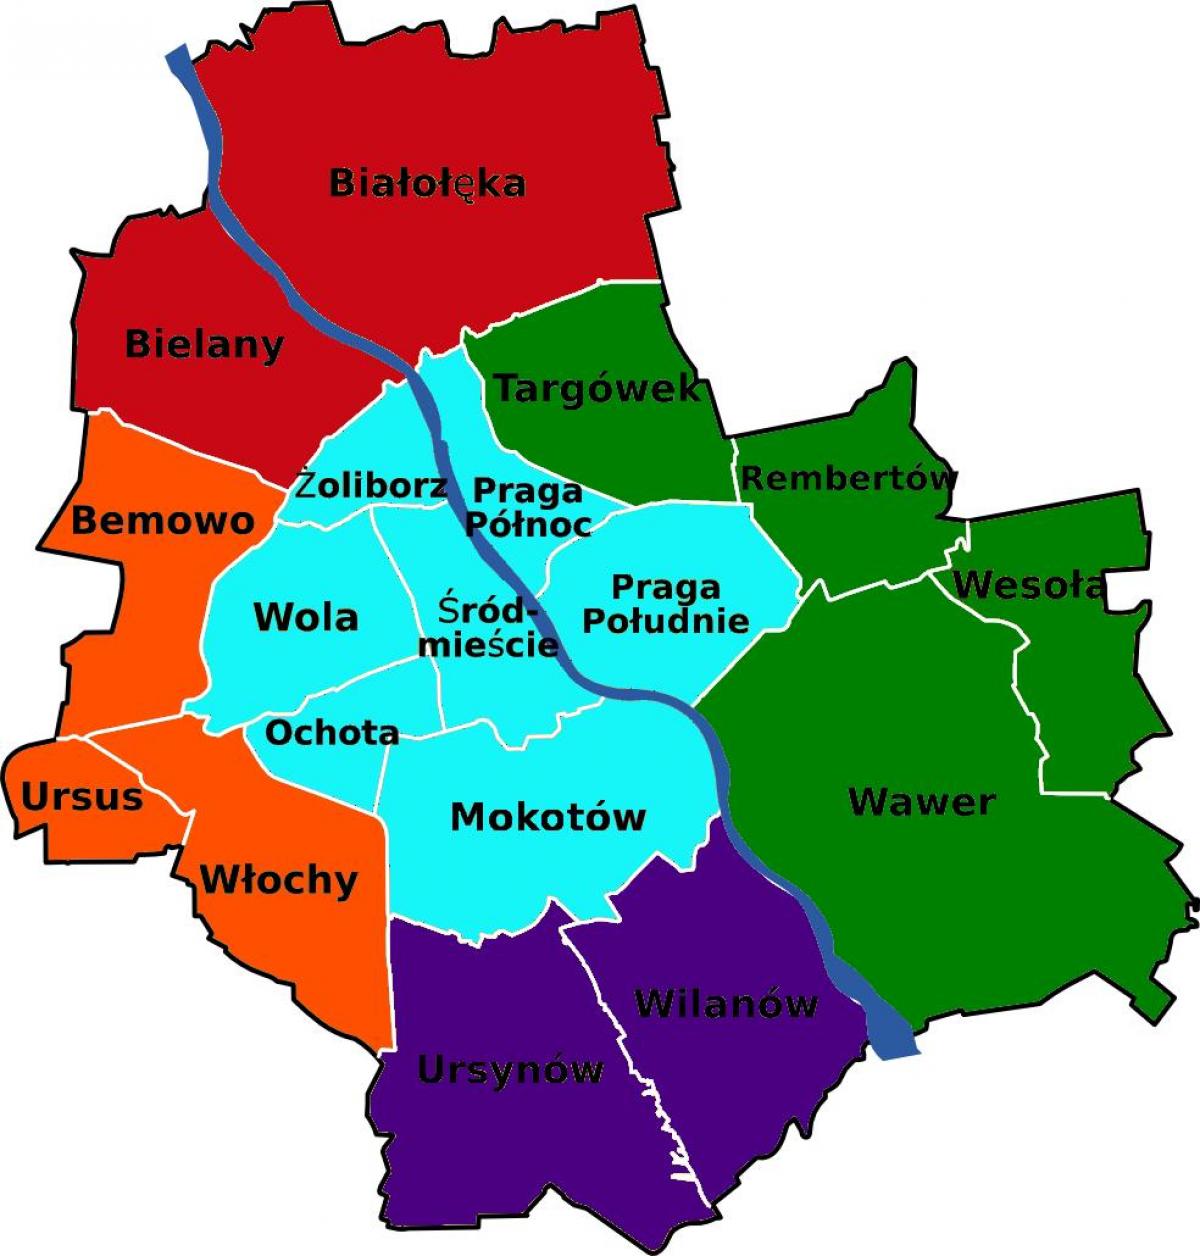 מפה של מחוזות ורשה 